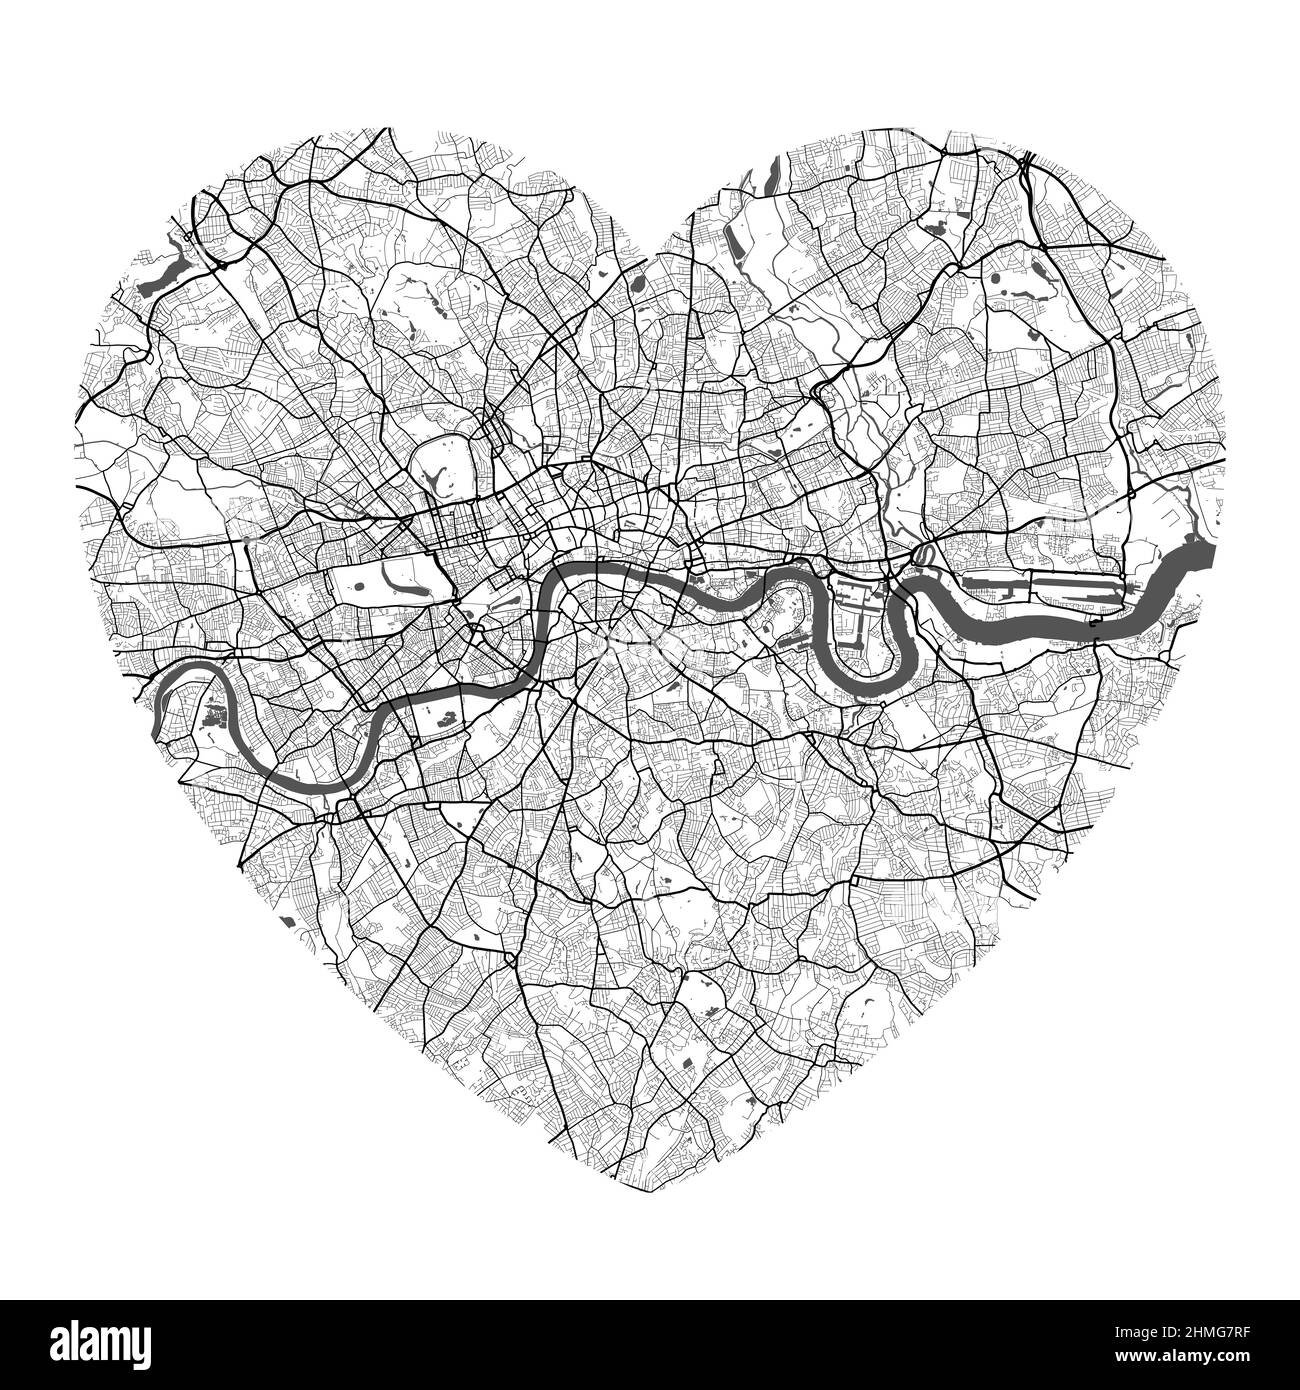 Mappa vettoriale a forma di cuore della città di Londra. Illustrazione dei colori bianco e nero. Strade, strade, fiumi. Illustrazione Vettoriale